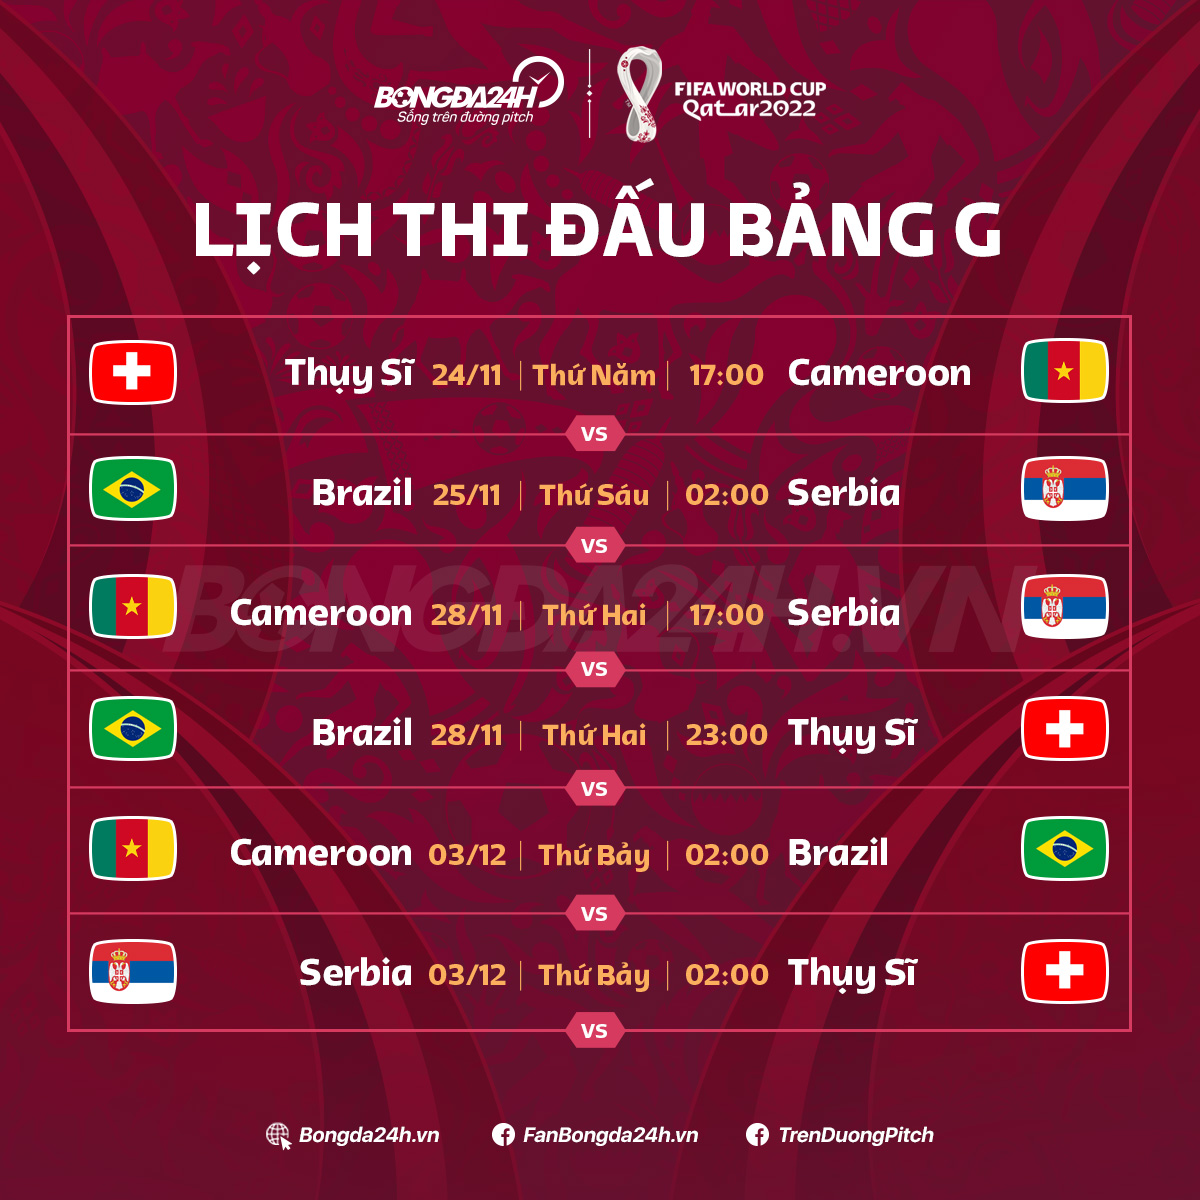 Lich thi dau bang G World Cup 2022